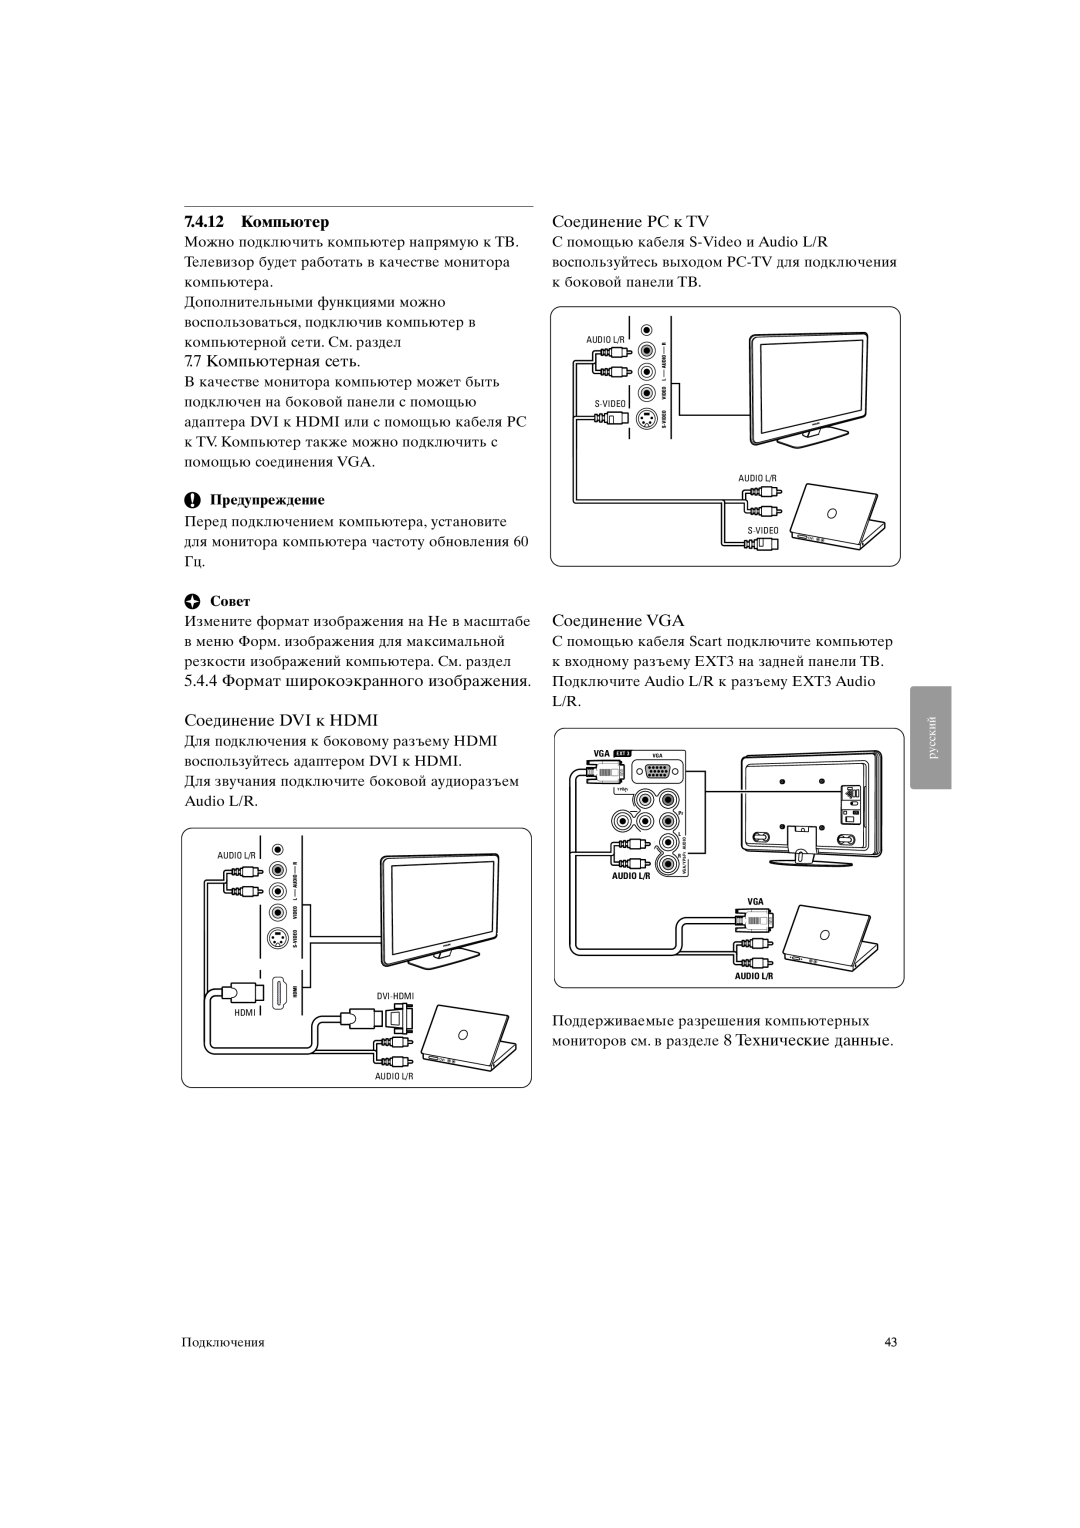 Philips 37PFL9903H/10 7.4.12Компьютер, 5.4.4 Формат широкоэкранного изображения, Соединение DVI к HDMI, Соединение PC к TV 